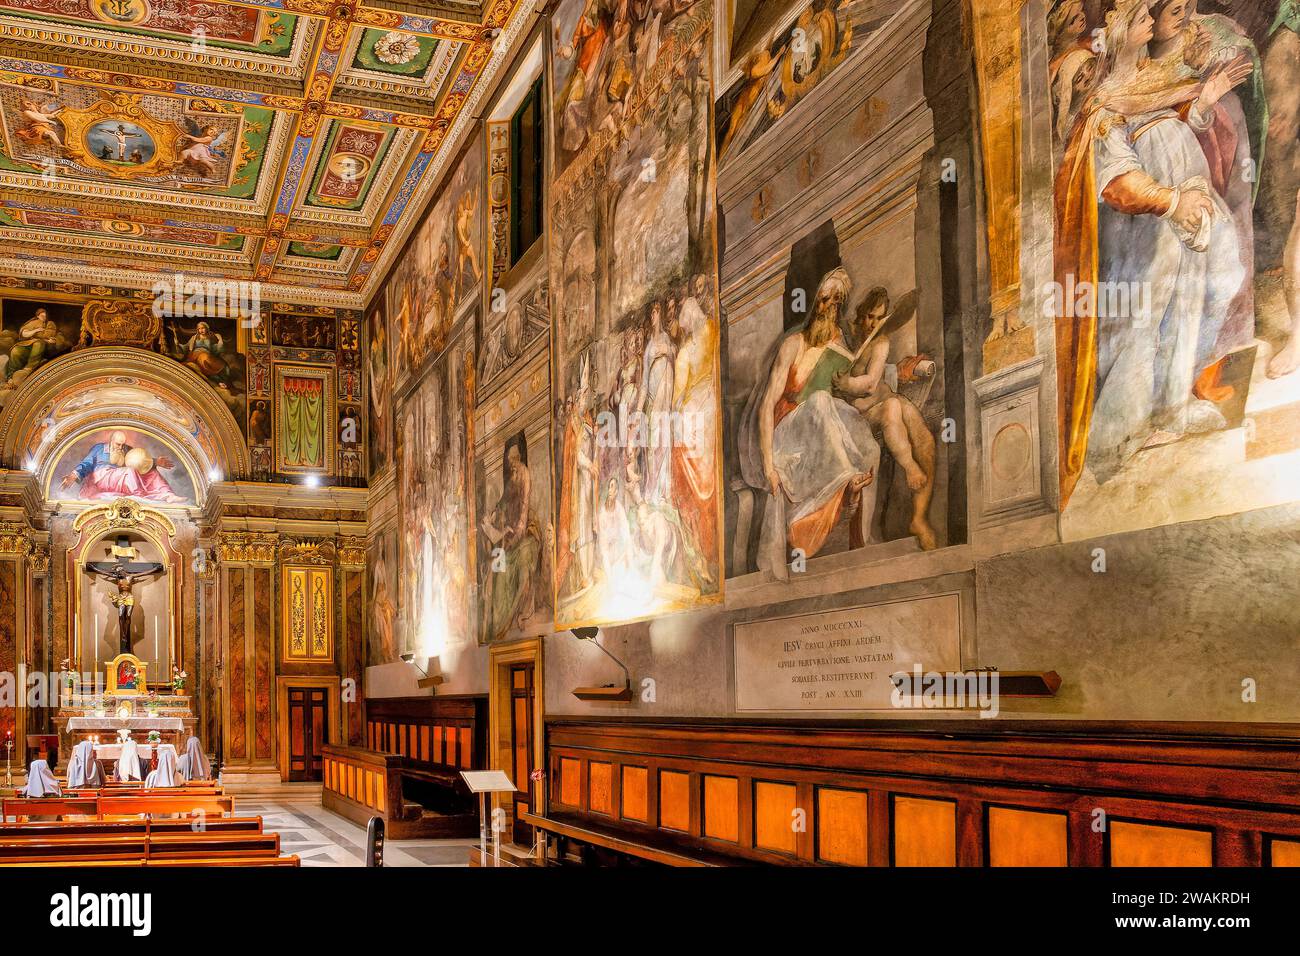 Intérieur de l'Oratoire de Santissimo Crocifisso, Rome, Italie Banque D'Images